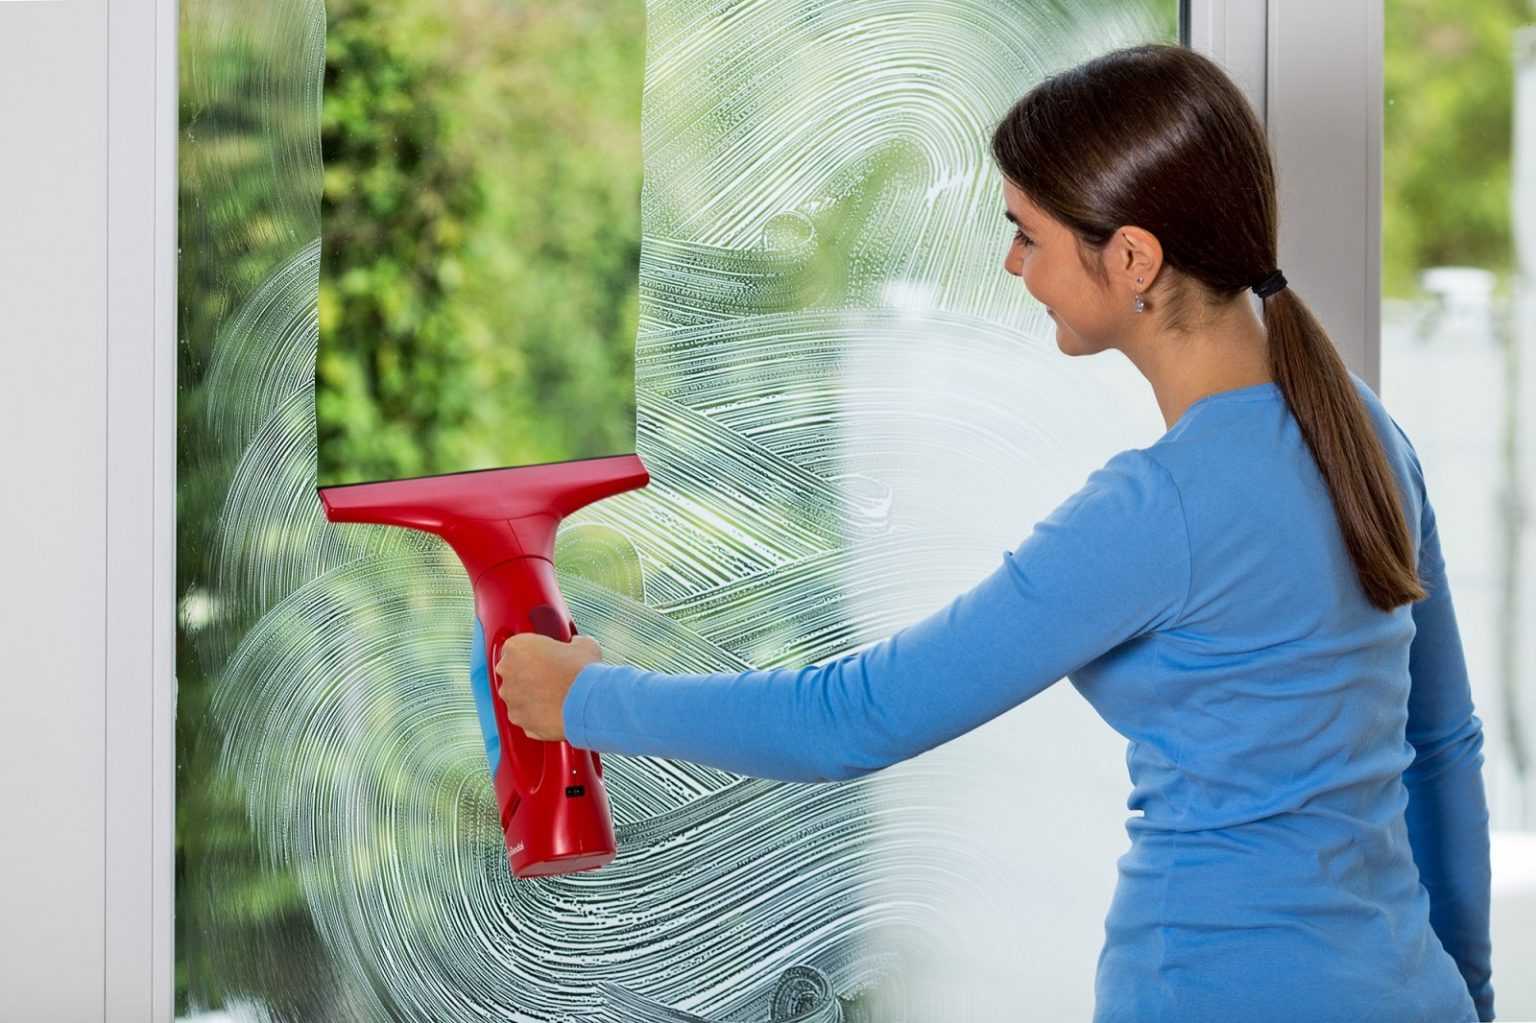 Как помыть окна без разводов в домашних условиях